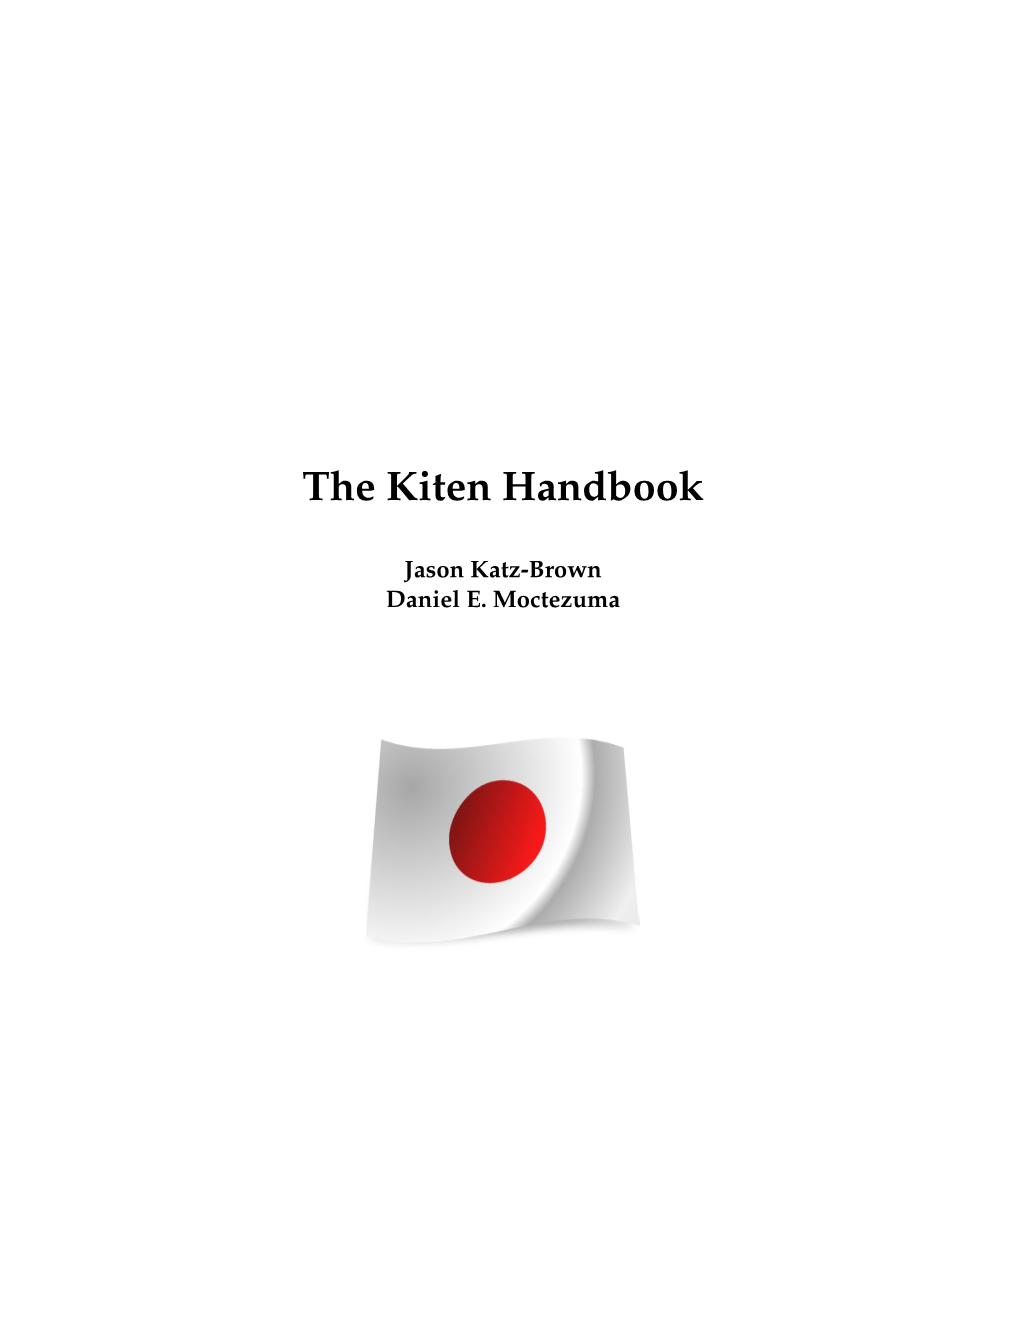 The Kiten Handbook